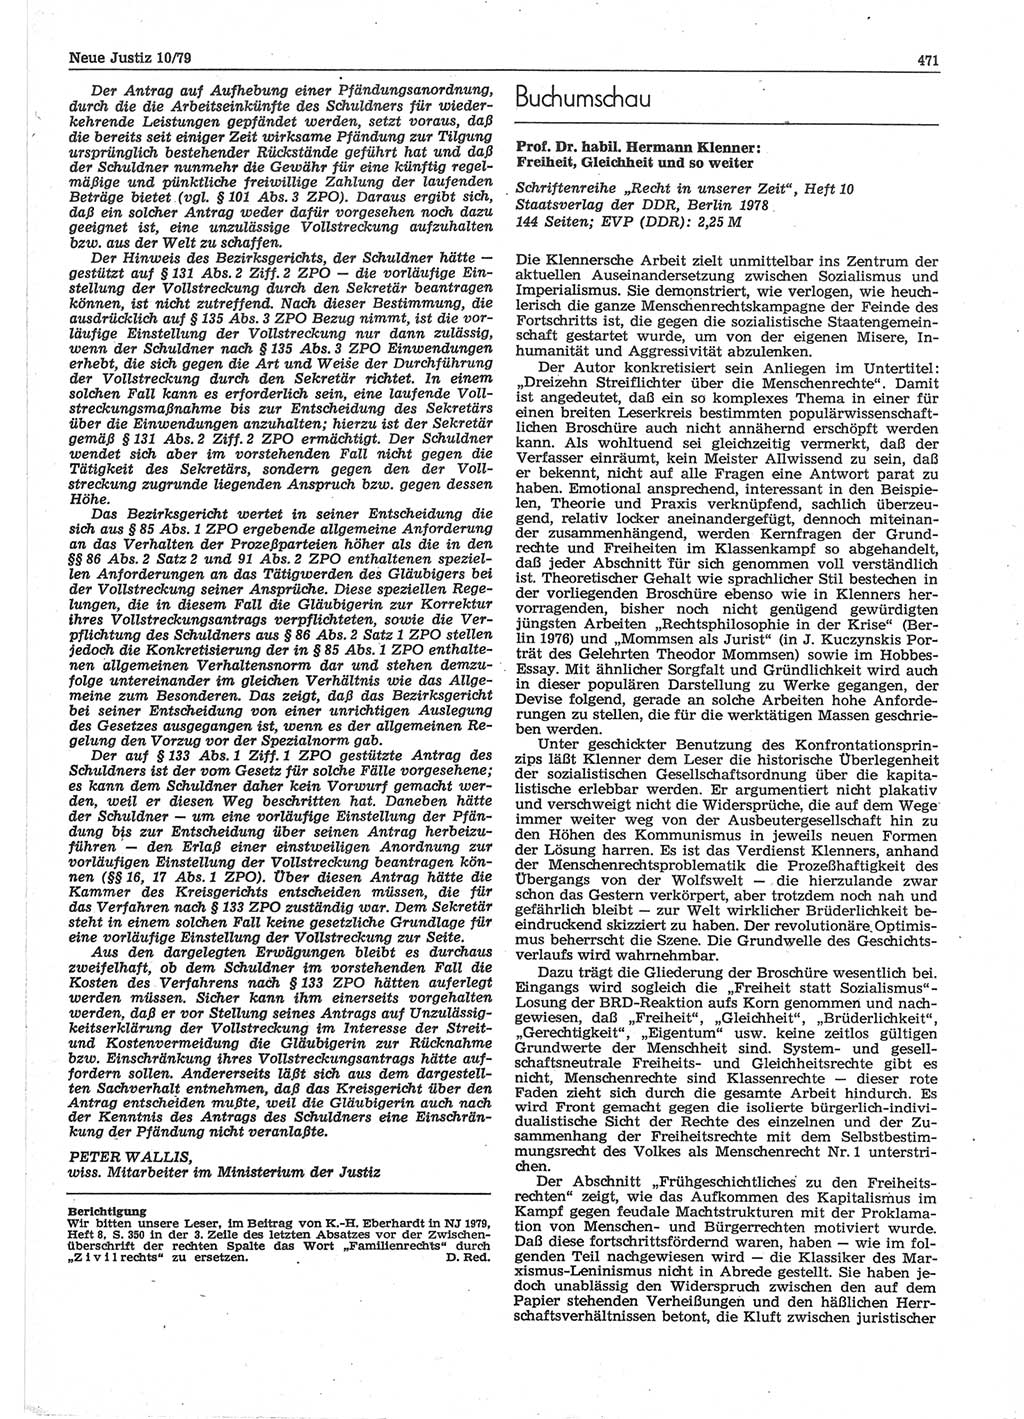 Neue Justiz (NJ), Zeitschrift für sozialistisches Recht und Gesetzlichkeit [Deutsche Demokratische Republik (DDR)], 33. Jahrgang 1979, Seite 471 (NJ DDR 1979, S. 471)